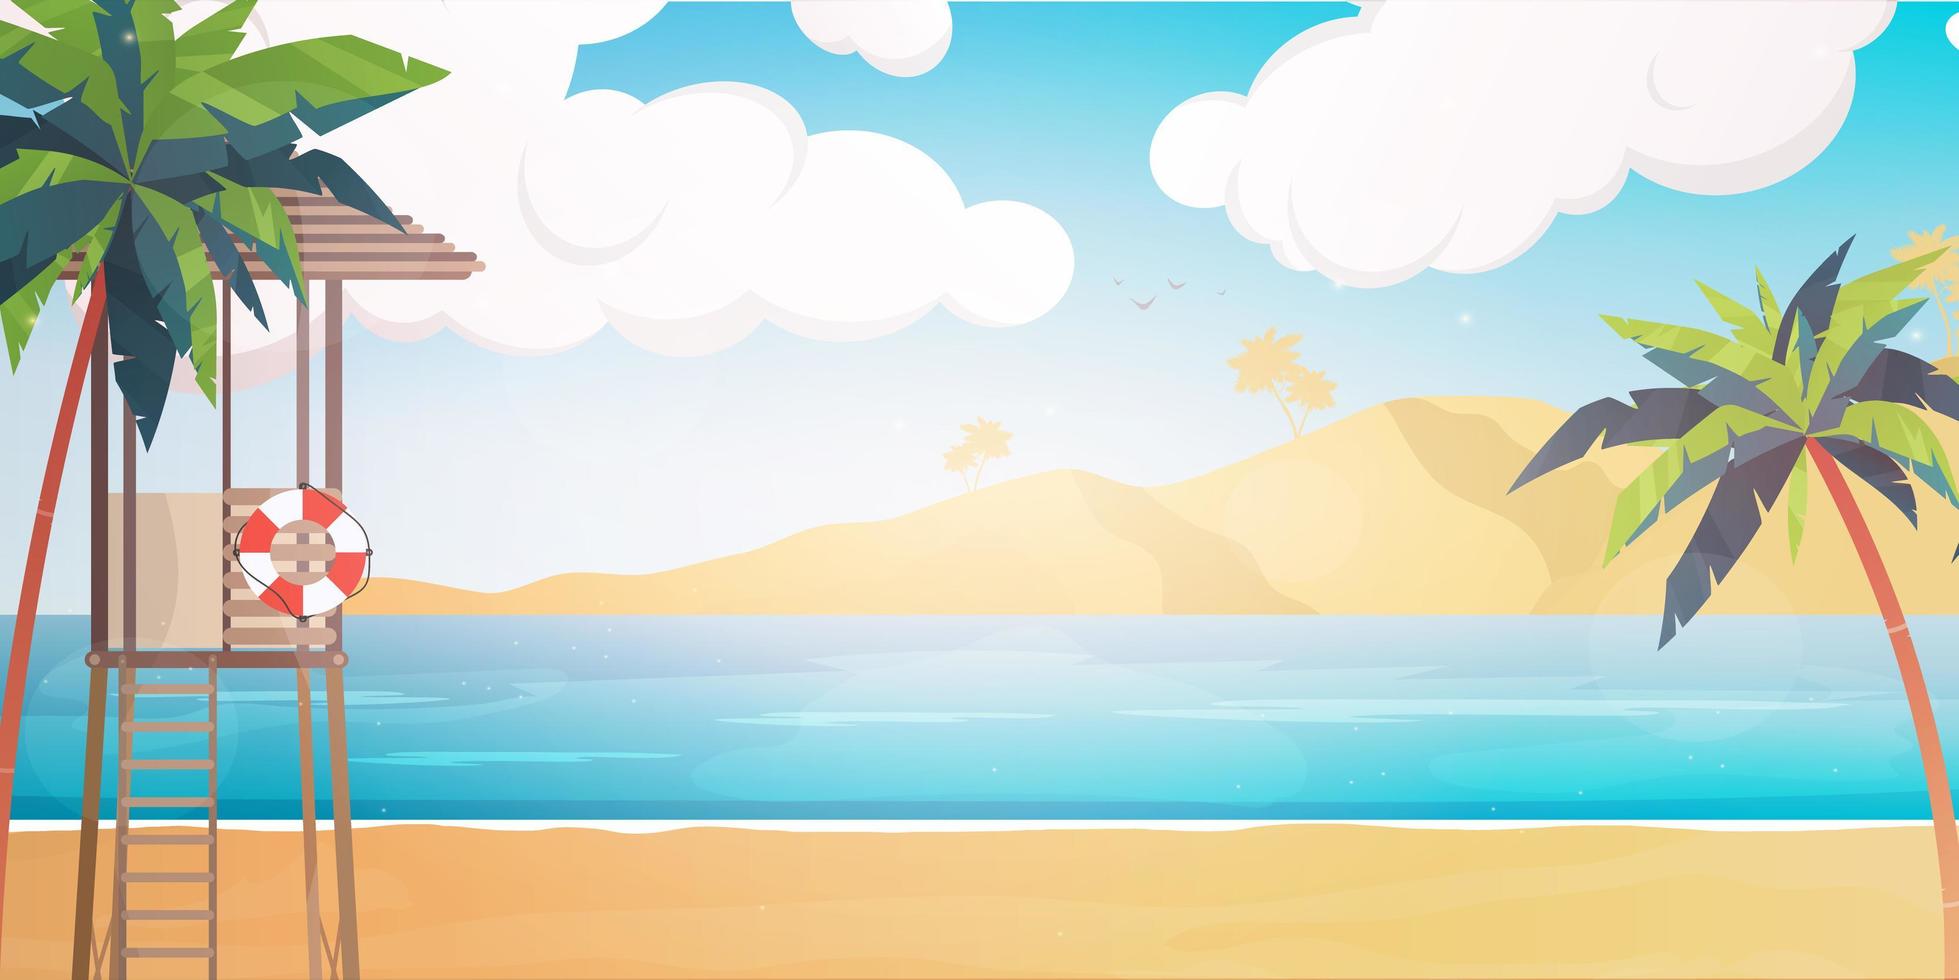 playa con puesto de salvamento. Ilustración de verano en estilo de dibujos animados. vector